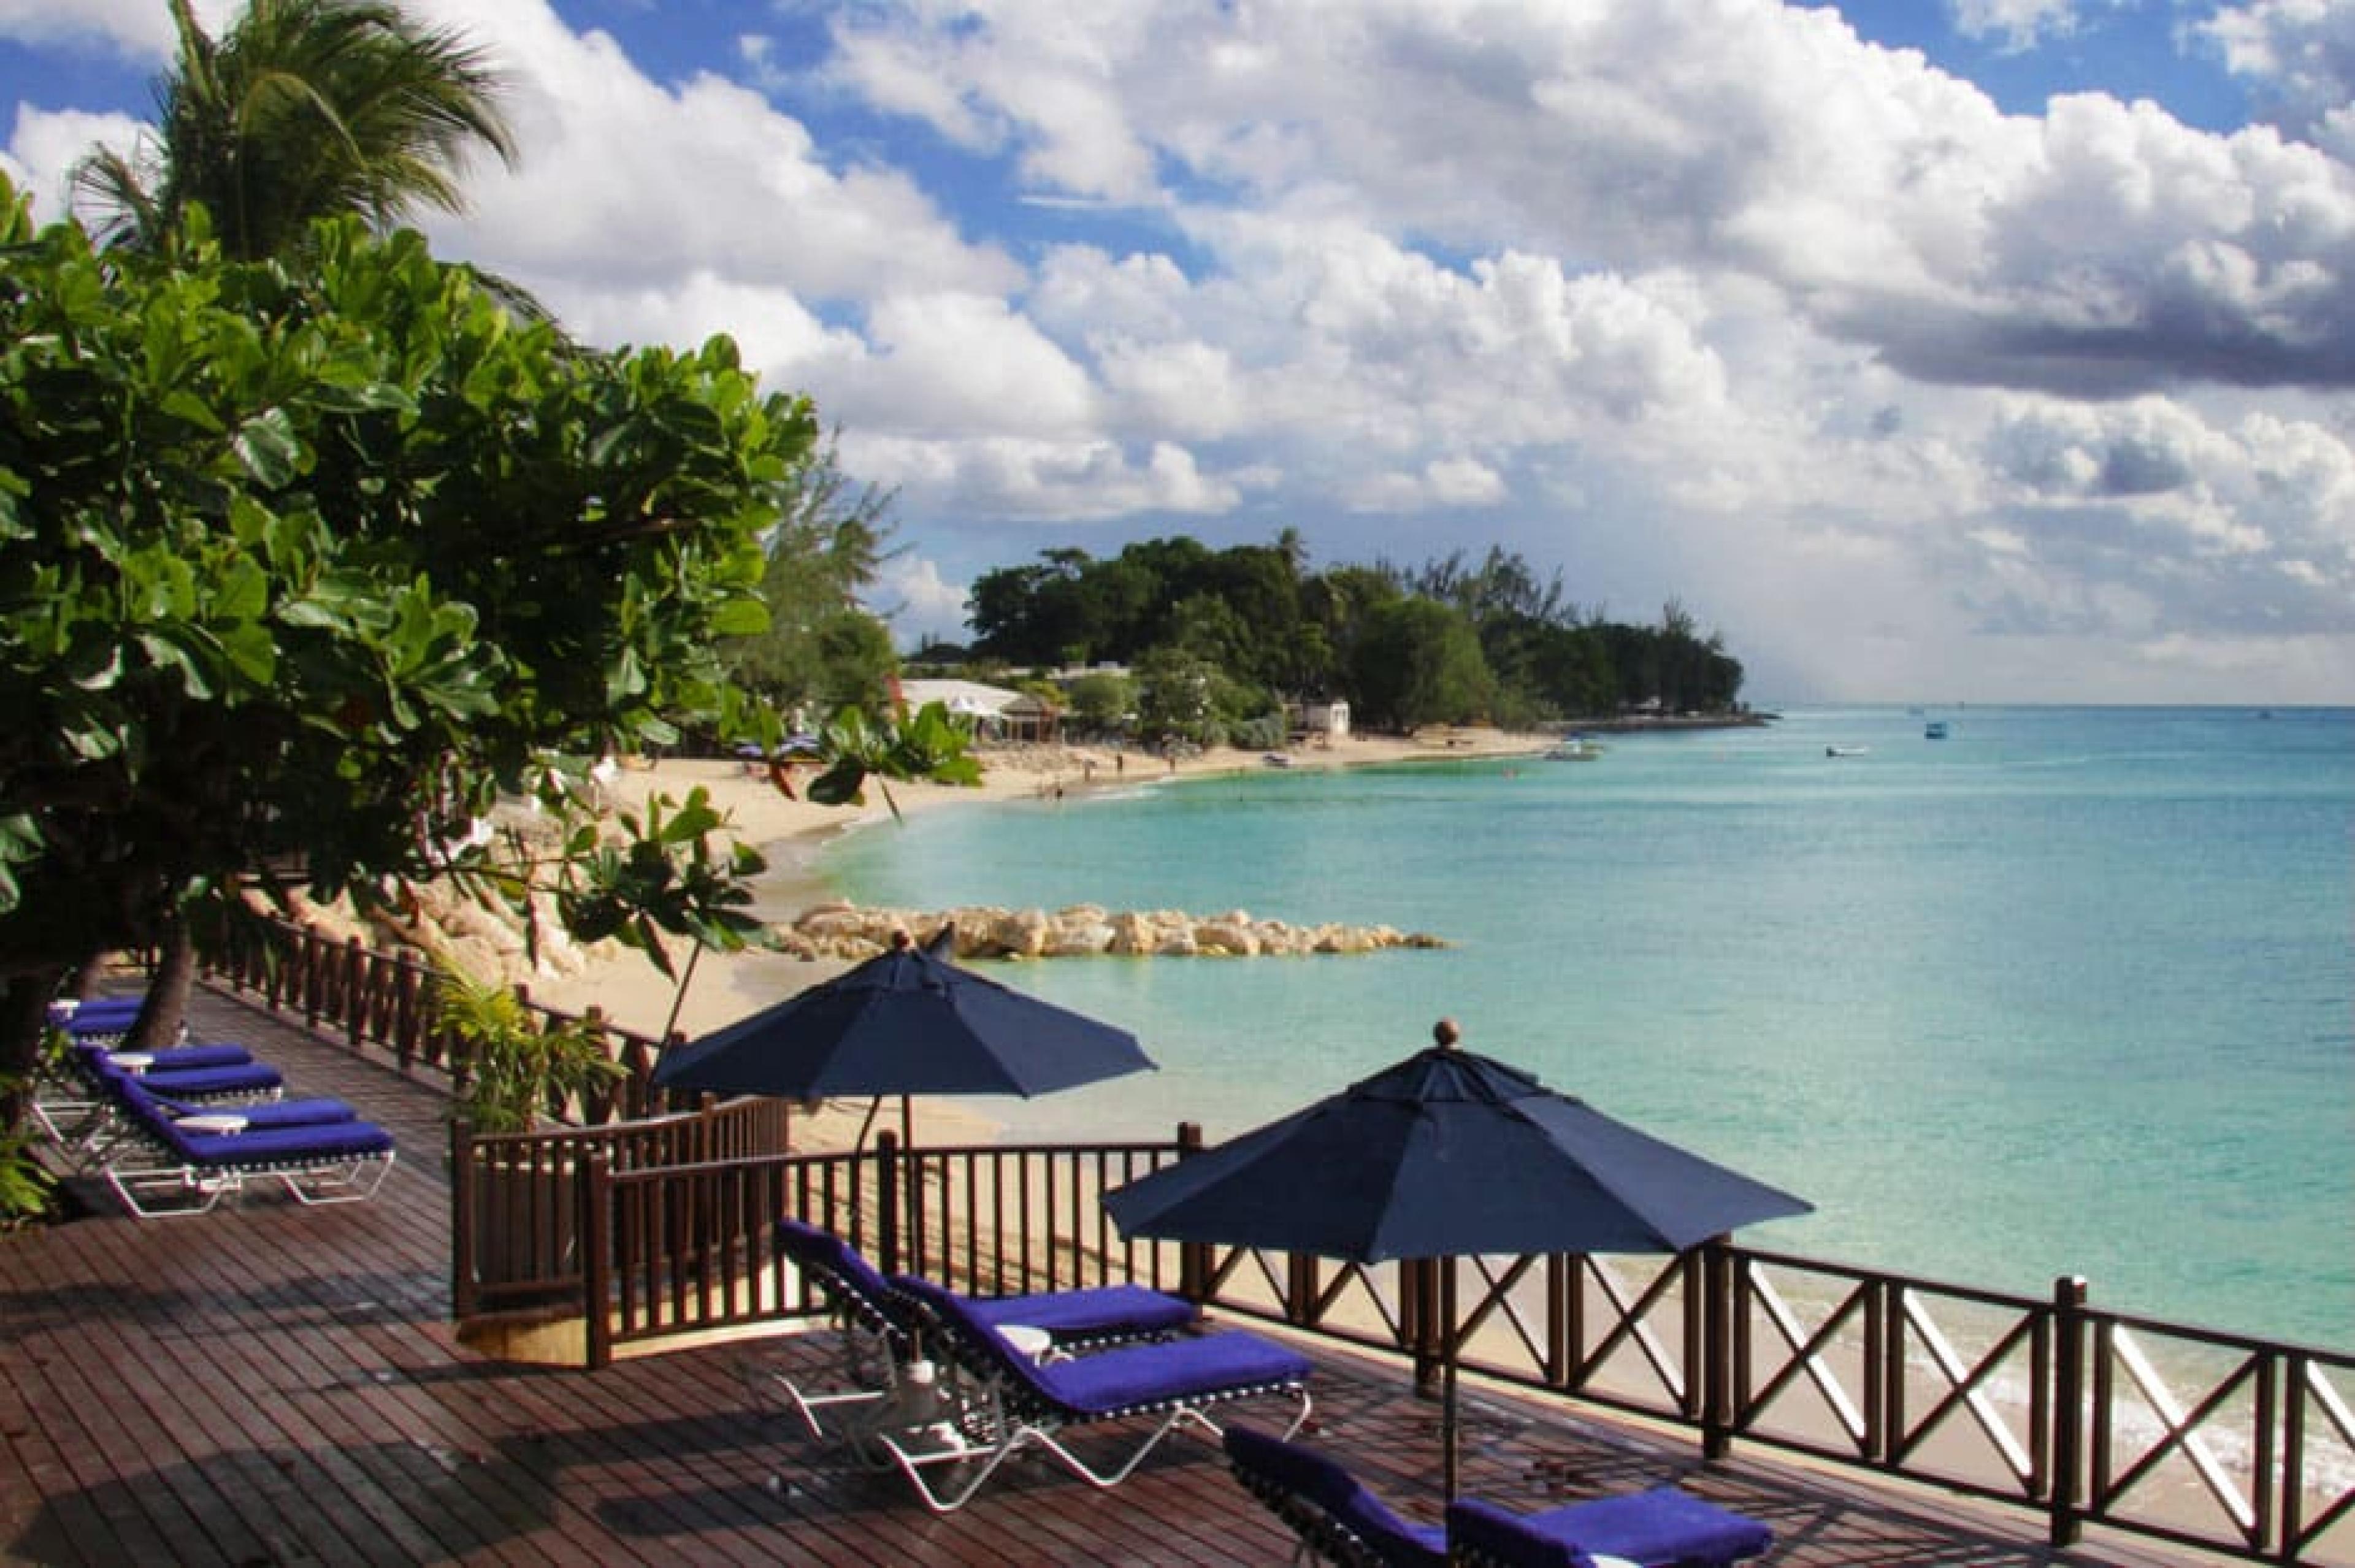 Pool Lounge at Sandpiper, Barbados, Caribbean